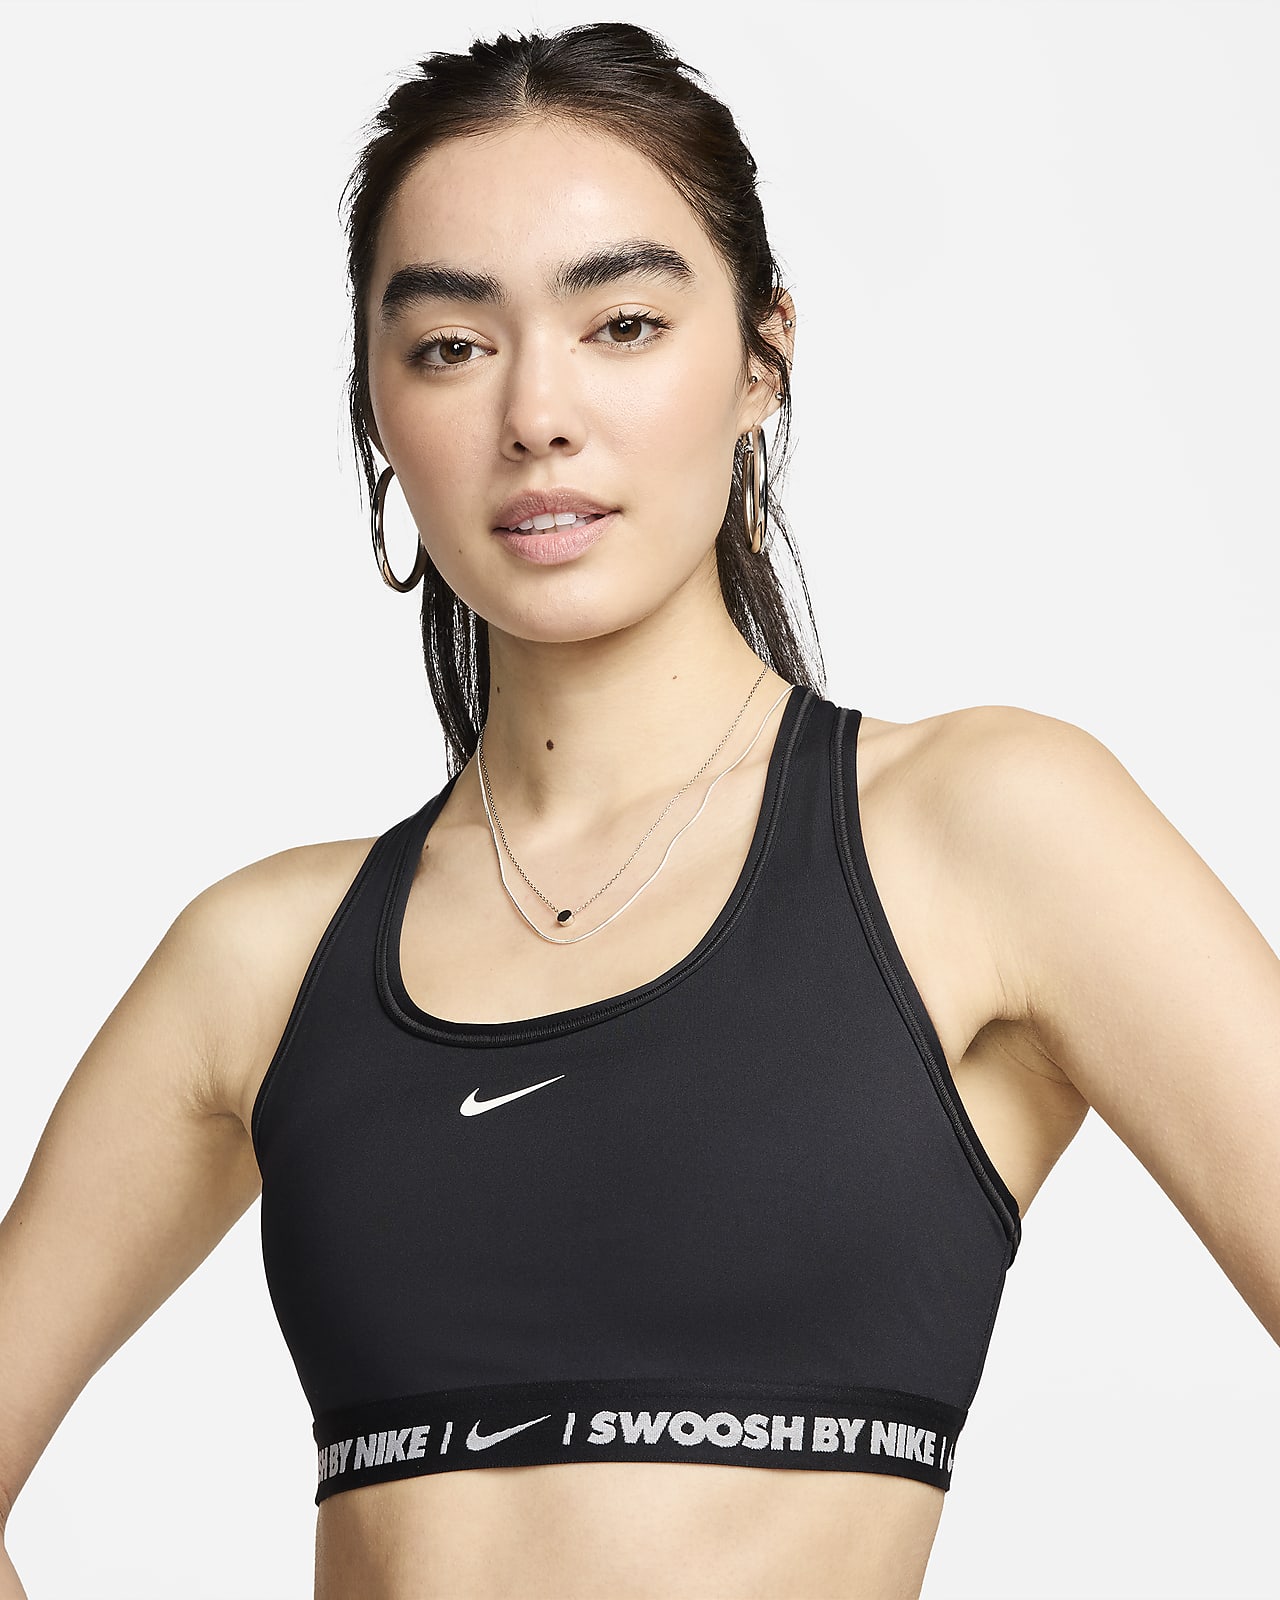 Dámská sportovní podprsenka Nike Swoosh se střední oporou a vycpávkami